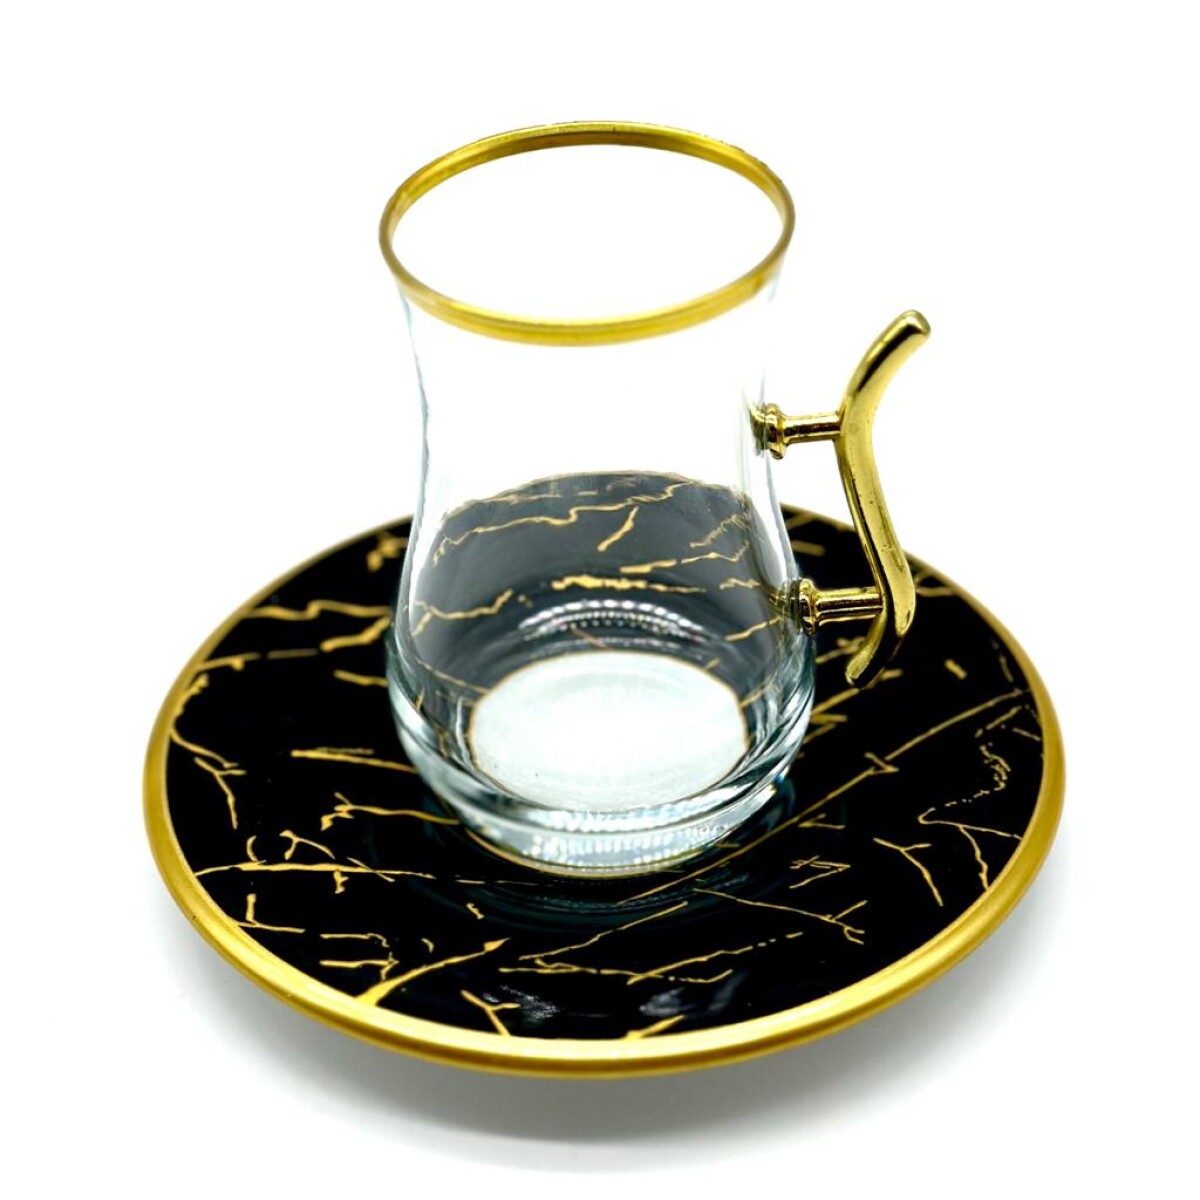 Vaso de té vip plato de cerámica x1 - Negro 